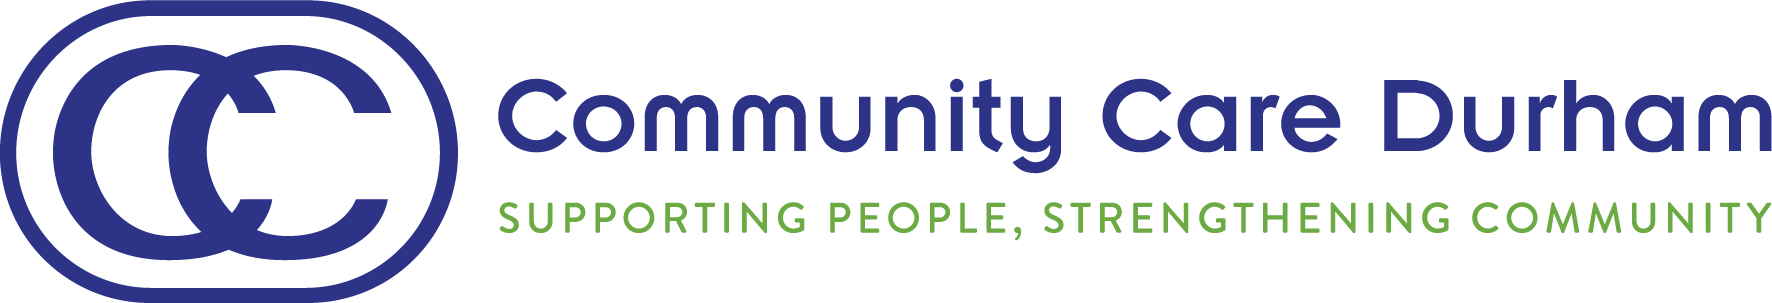 Community Care Durham logo